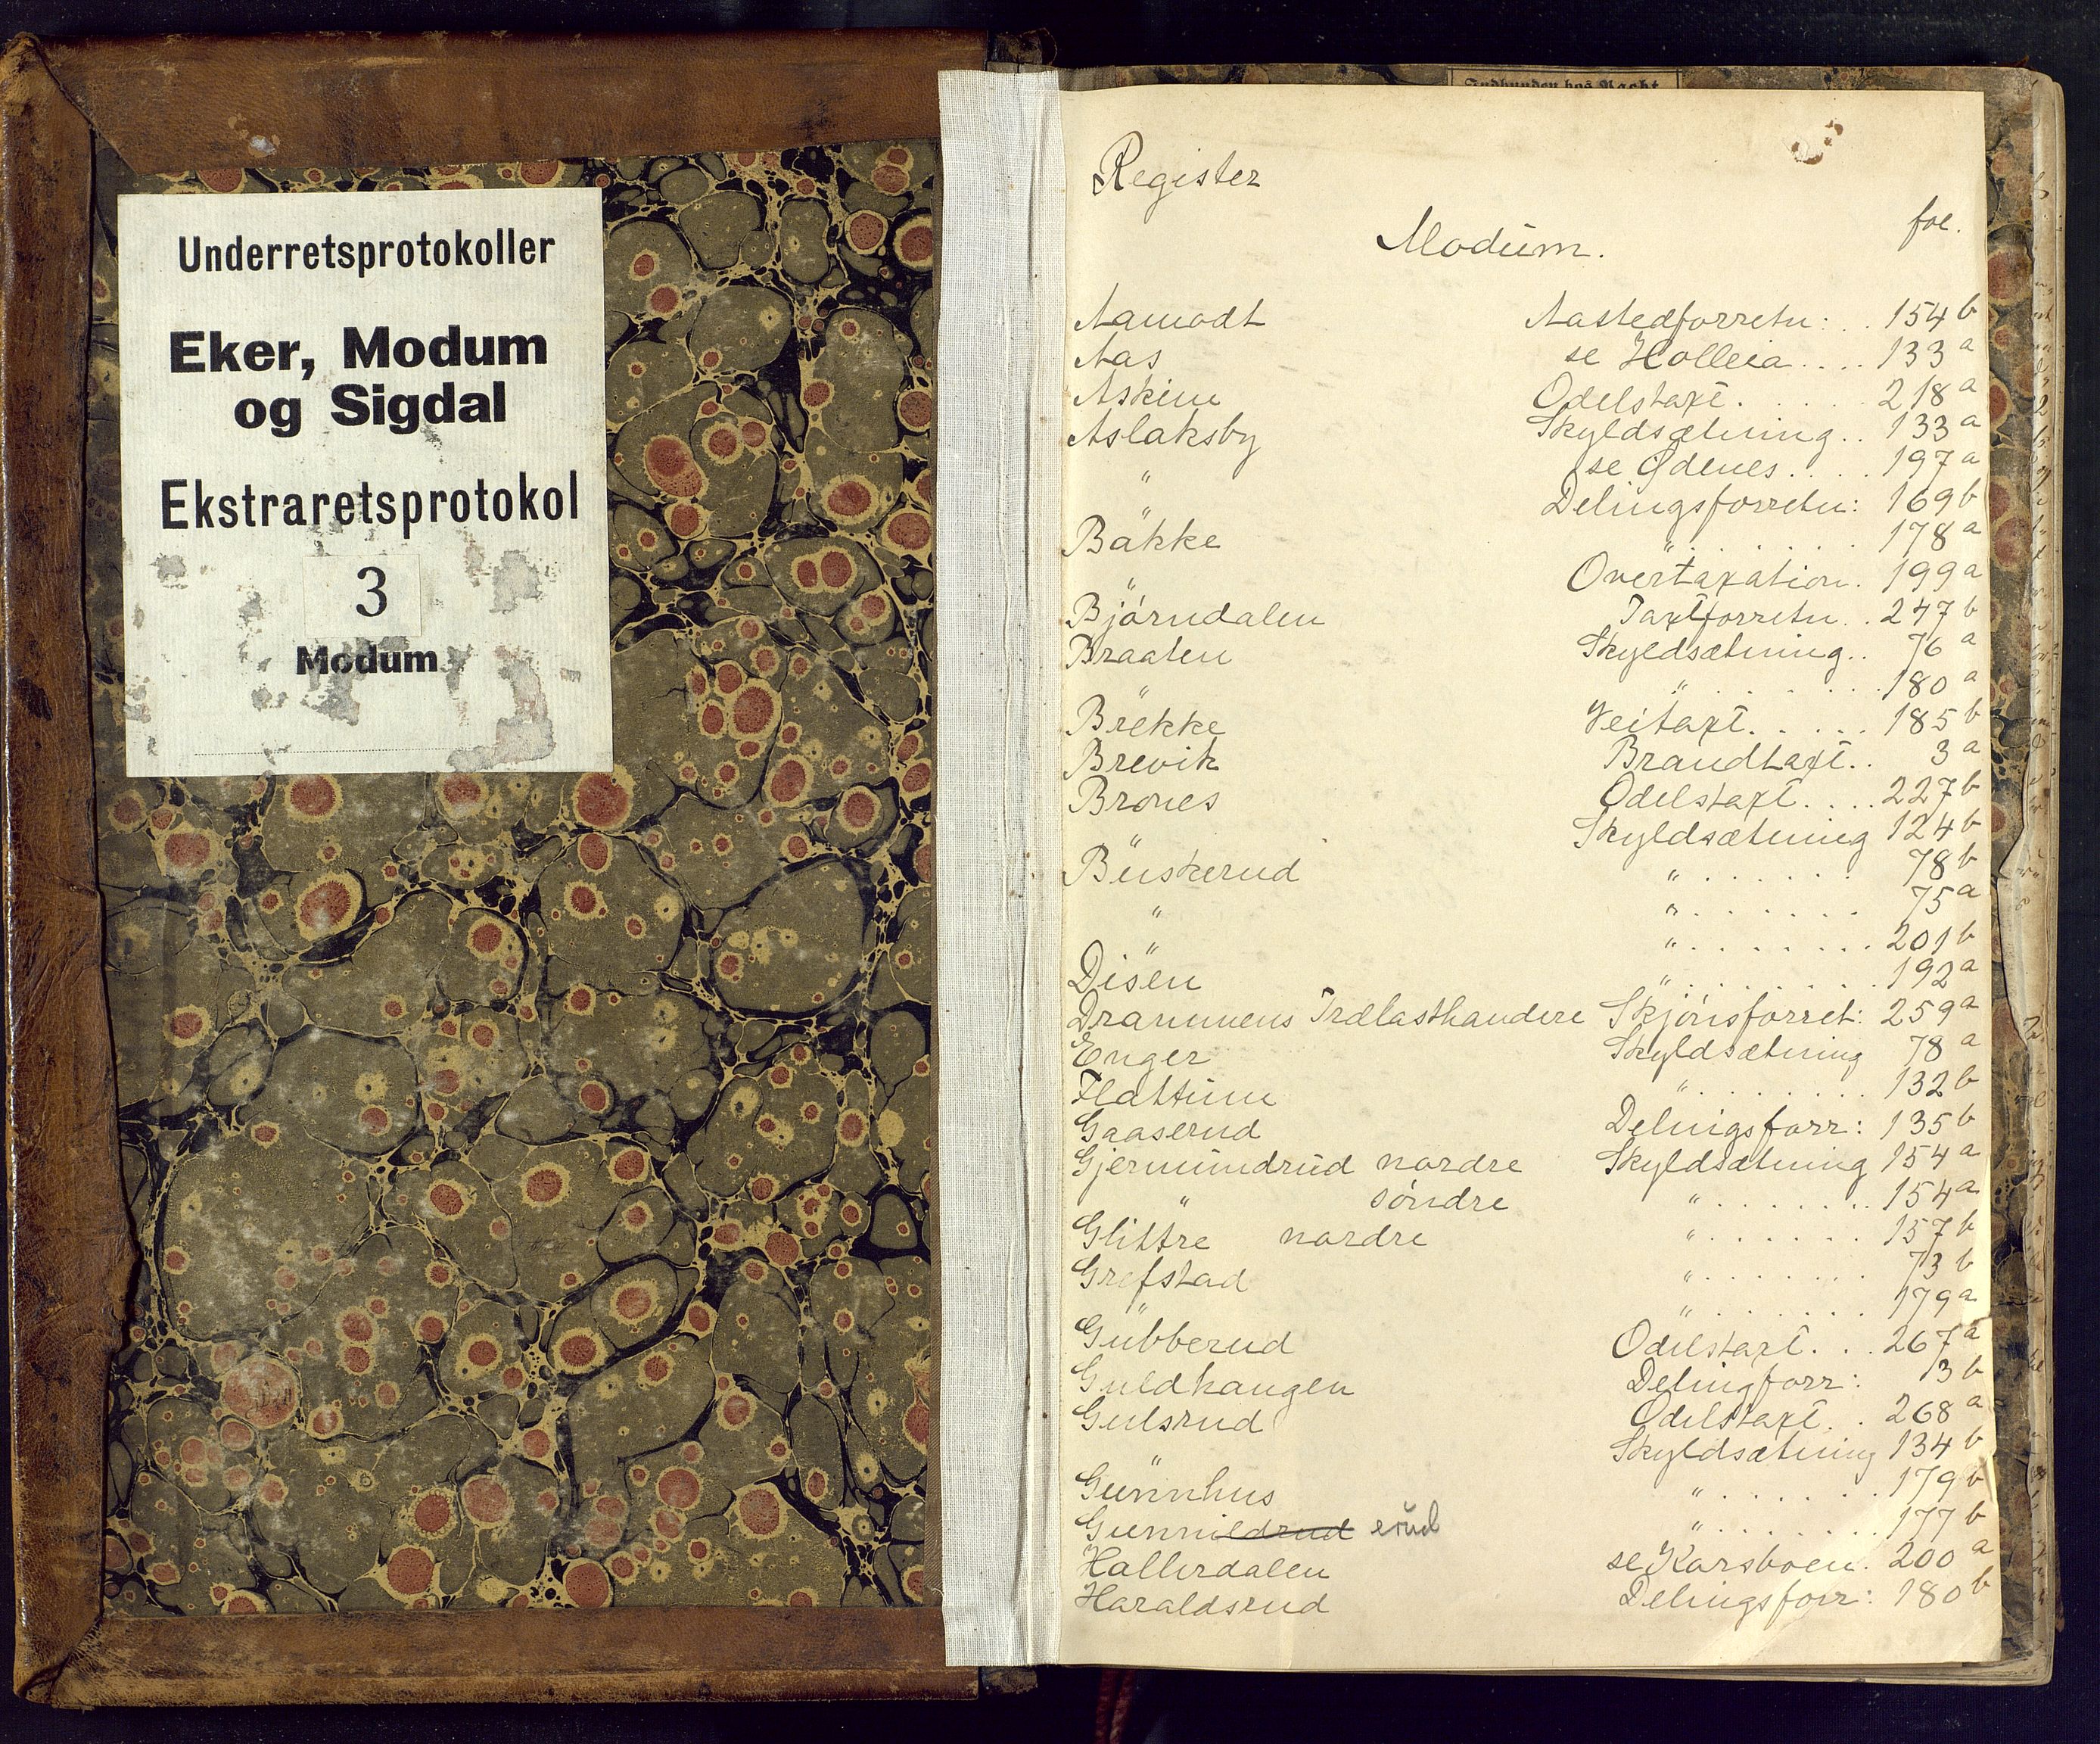 Eiker, Modum og Sigdal sorenskriveri, SAKO/A-123/F/Fc/L0009: Ekstrarettsprotokoll - Modum, 1841-1847